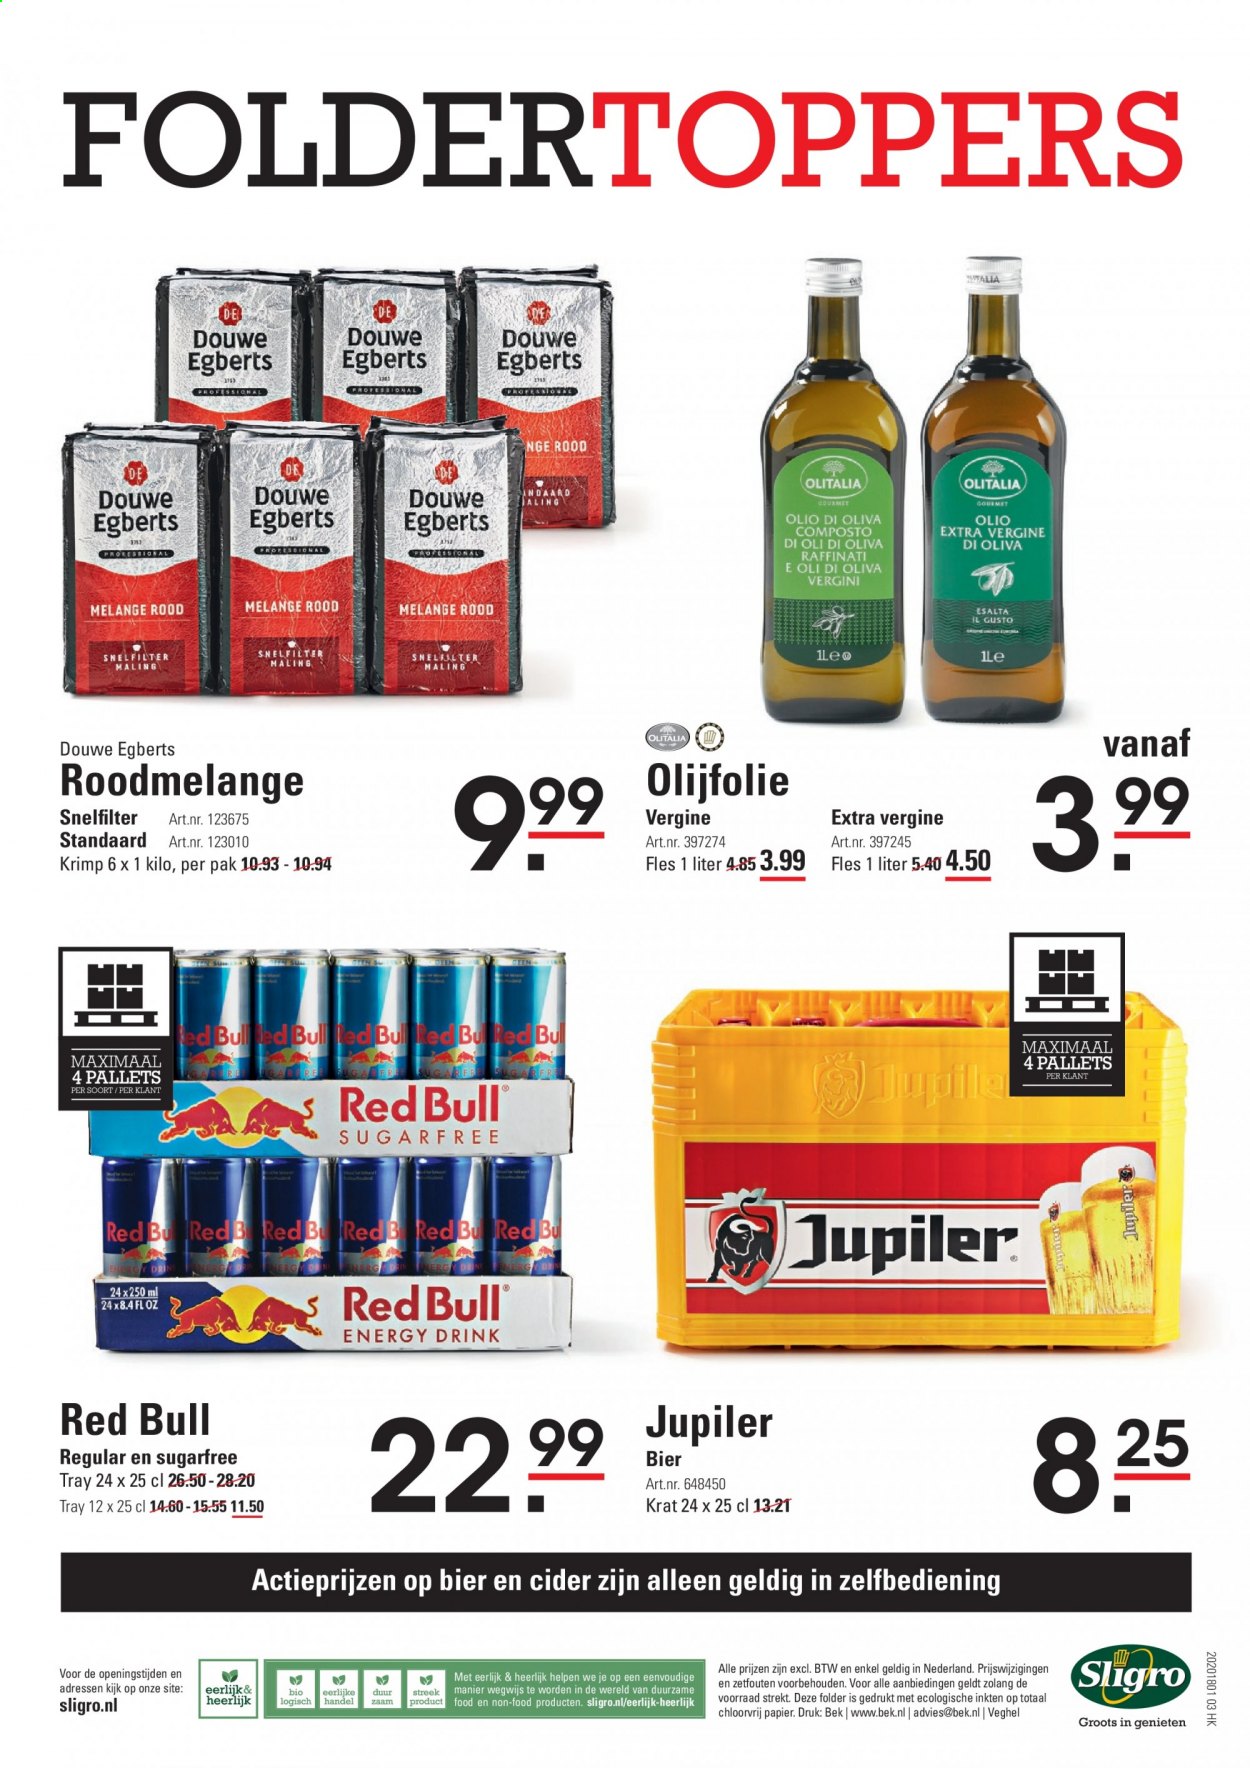 thumbnail - Sligro-aanbieding - 18-2-2021 - 8-3-2021 -  producten in de aanbieding - Jupiler, bier, olijfolie, Red Bull, Douwe Egberts, cider. Pagina 16.